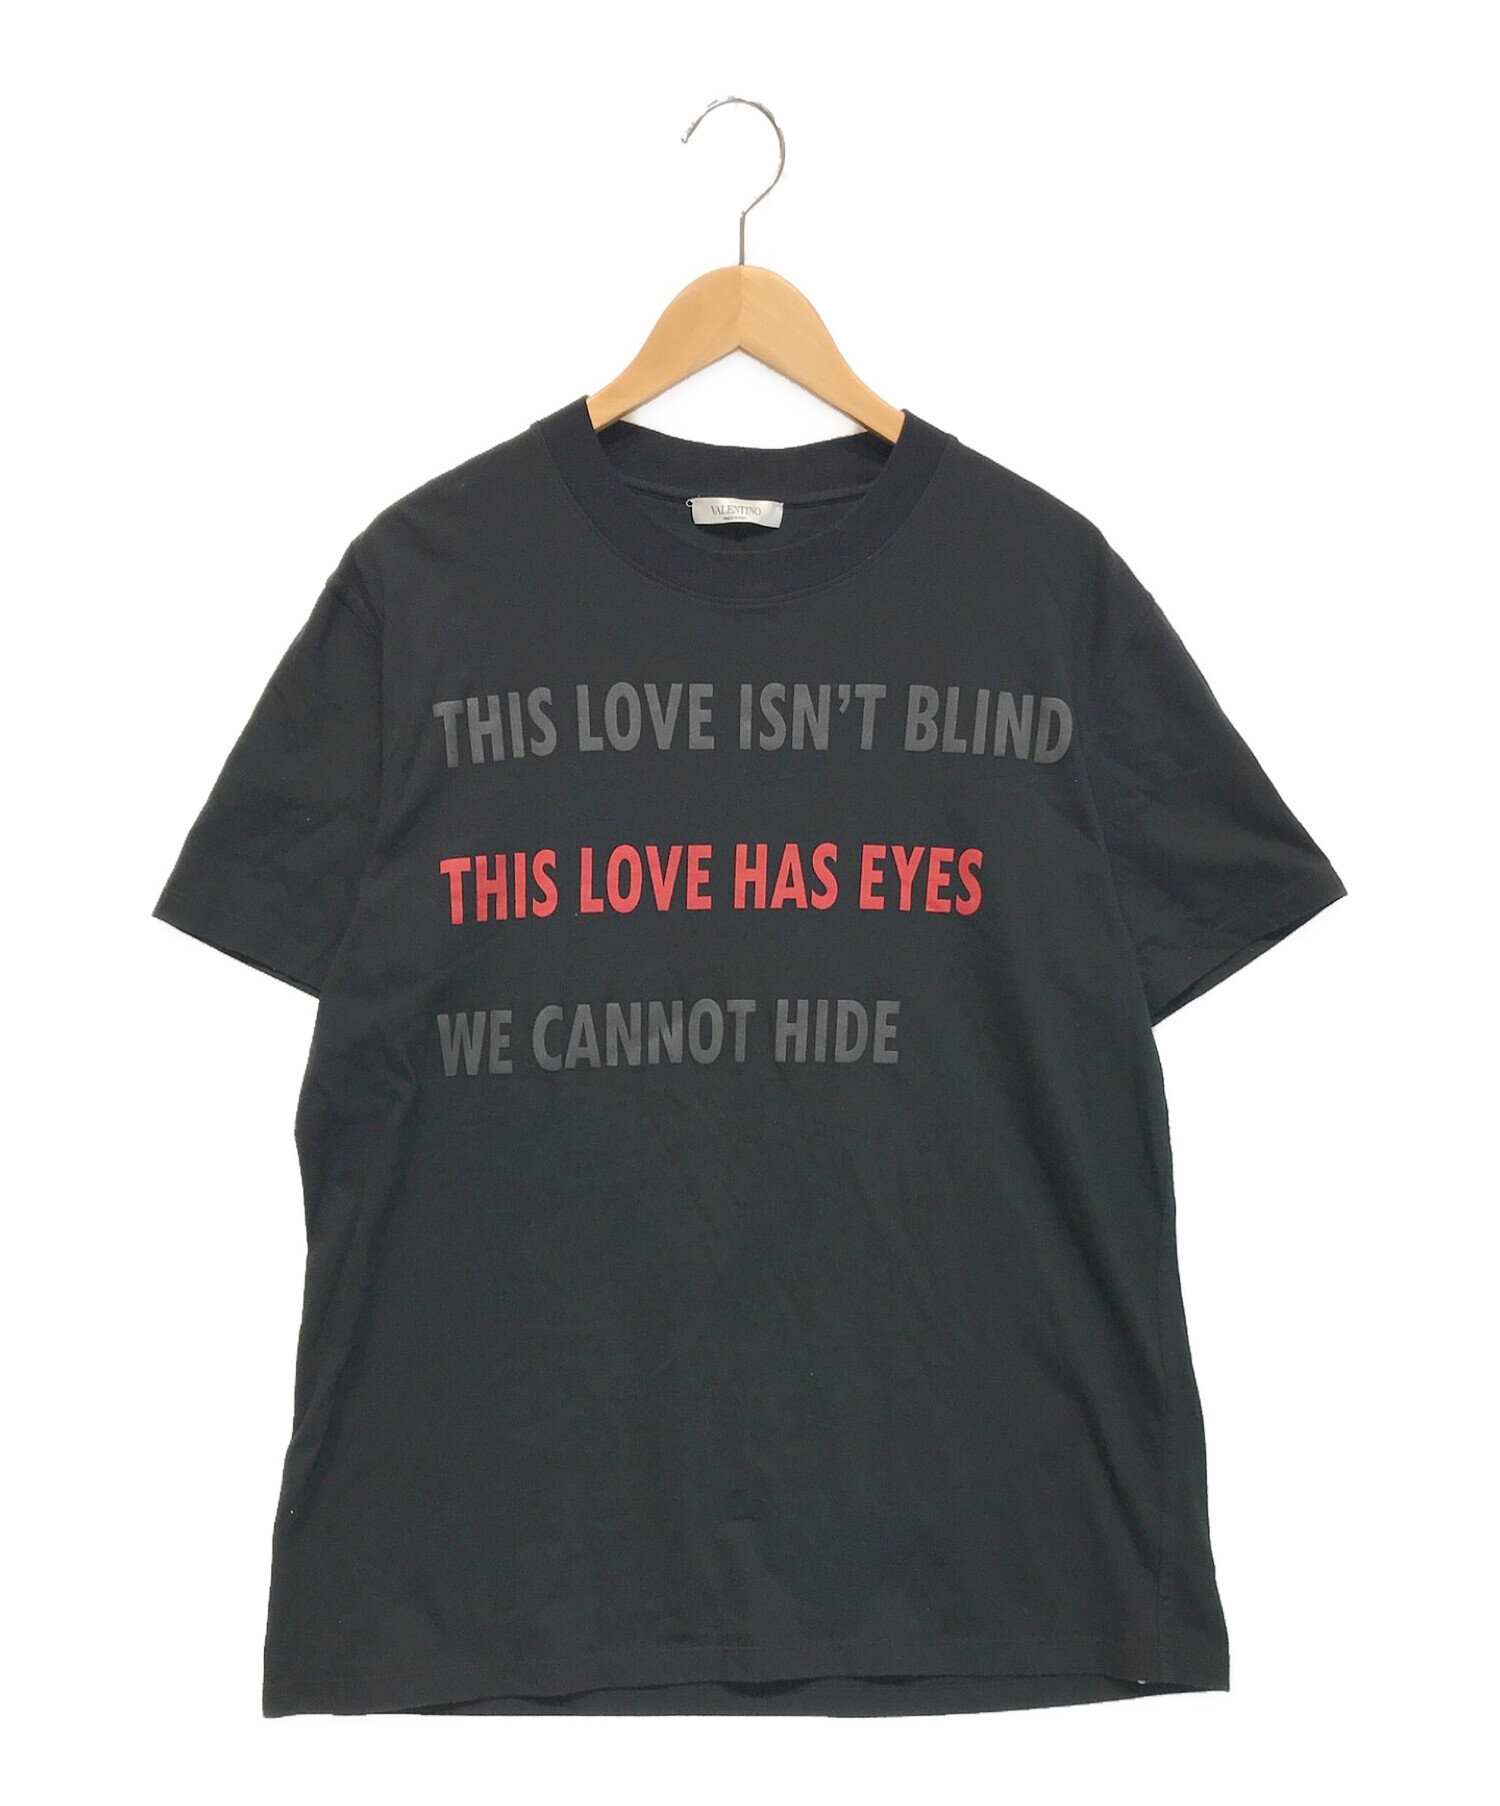 VALENTINO (ヴァレンティノ) This Love Has Eyes T-shirt / プリントTシャツ ブラック サイズ:L